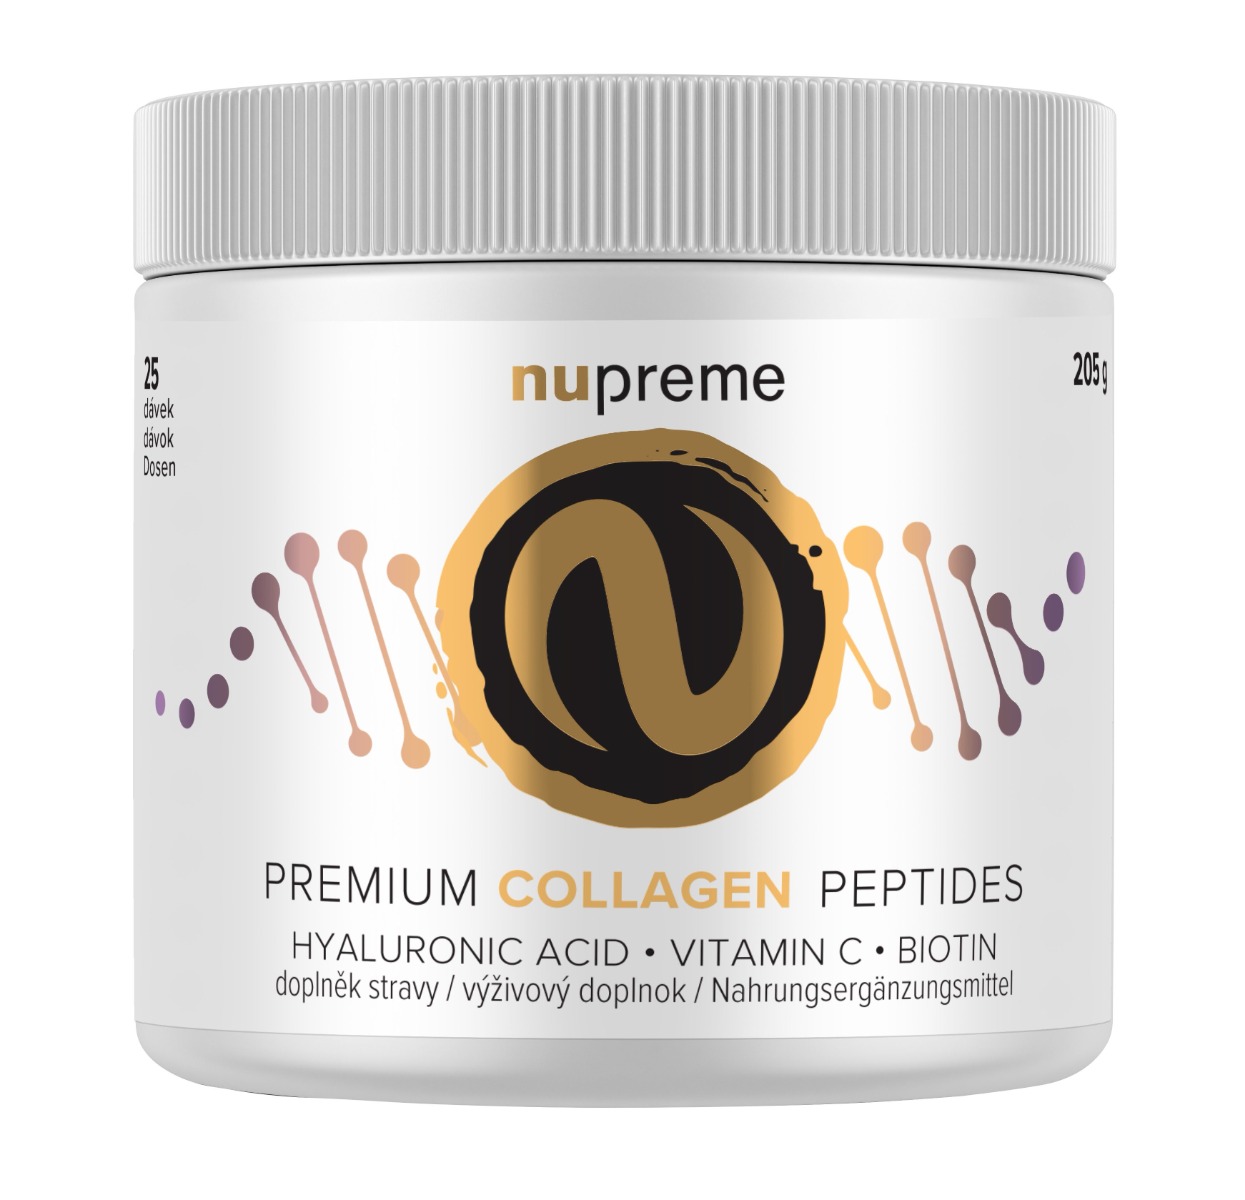 Nupreme Premium Collagen Peptides 205 g Nupreme